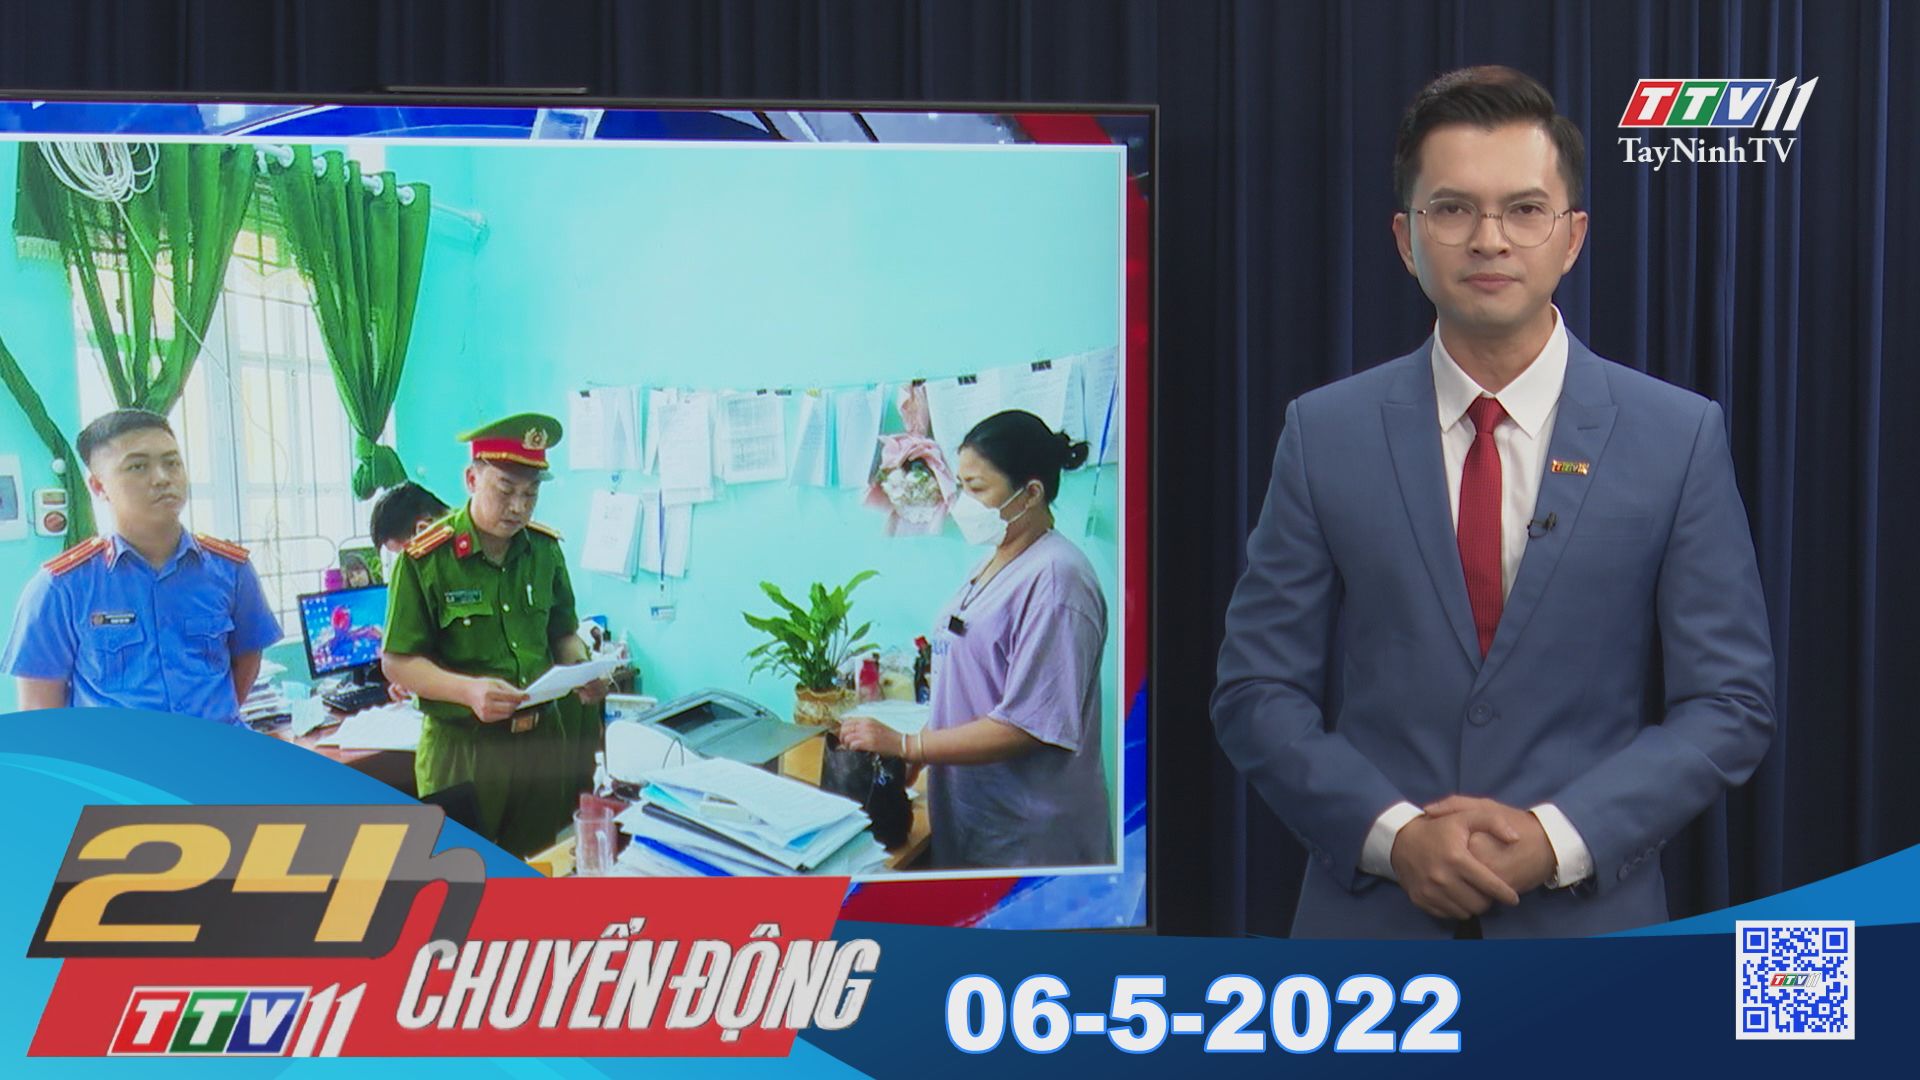 24h Chuyển động 06-5-2022 | Tin tức hôm nay | TayNinhTV